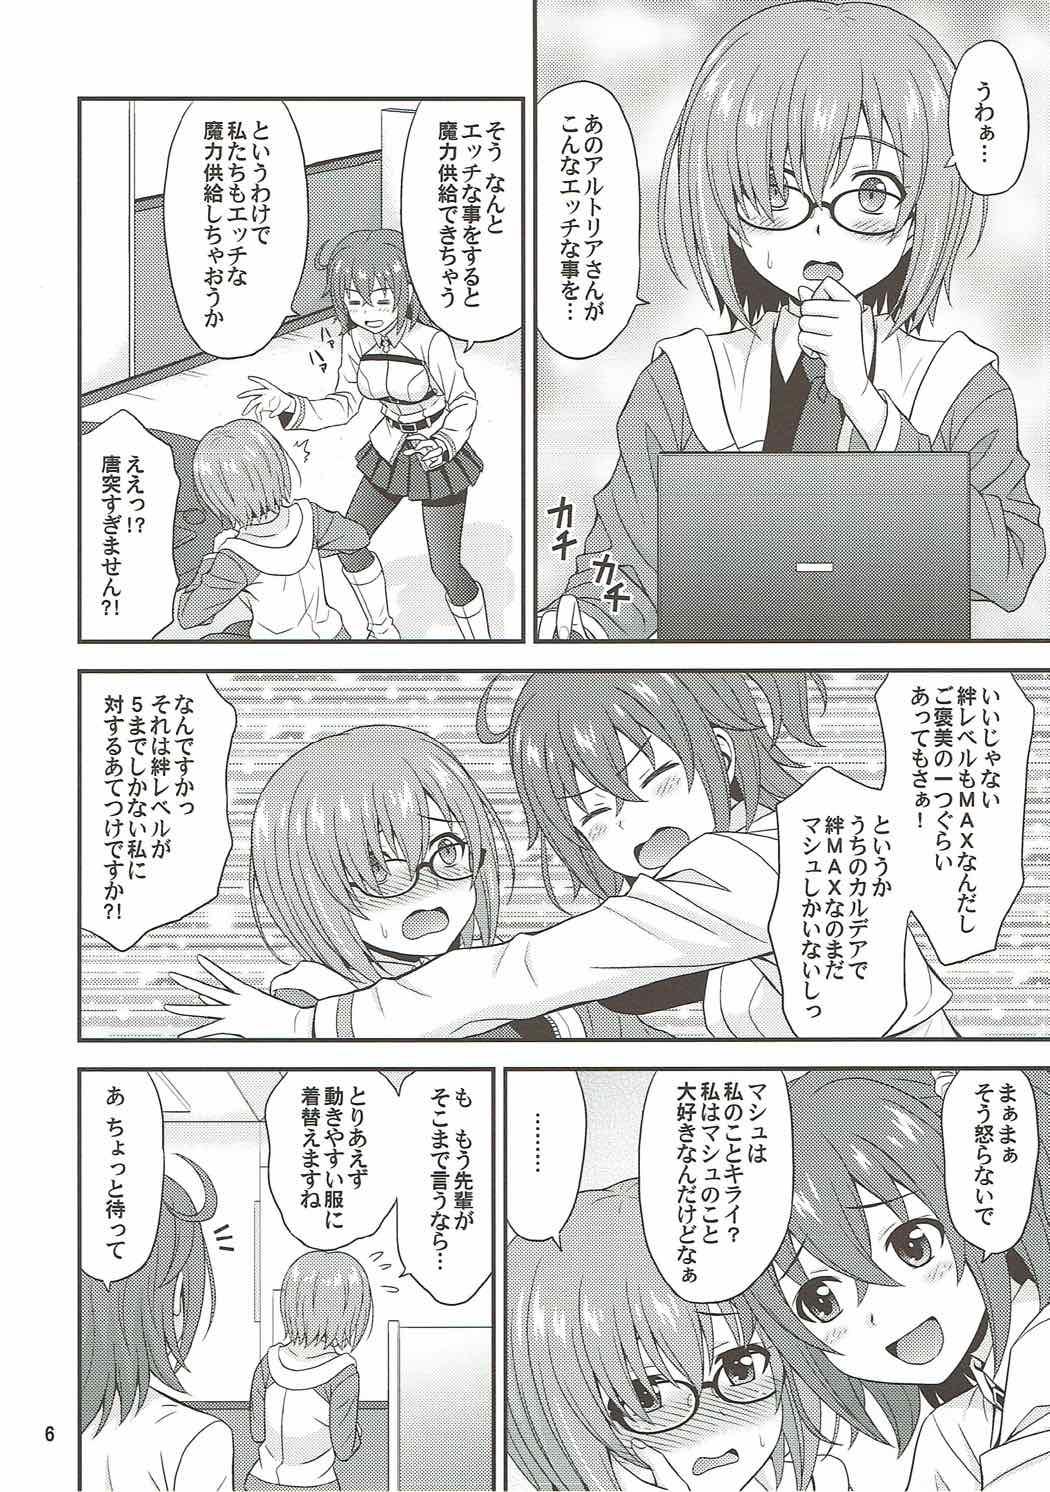 Gostosas Uchi no Megane no Niau Tayoreru Kouhai ga Totemo Kawaii! - Fate grand order Busty - Page 5